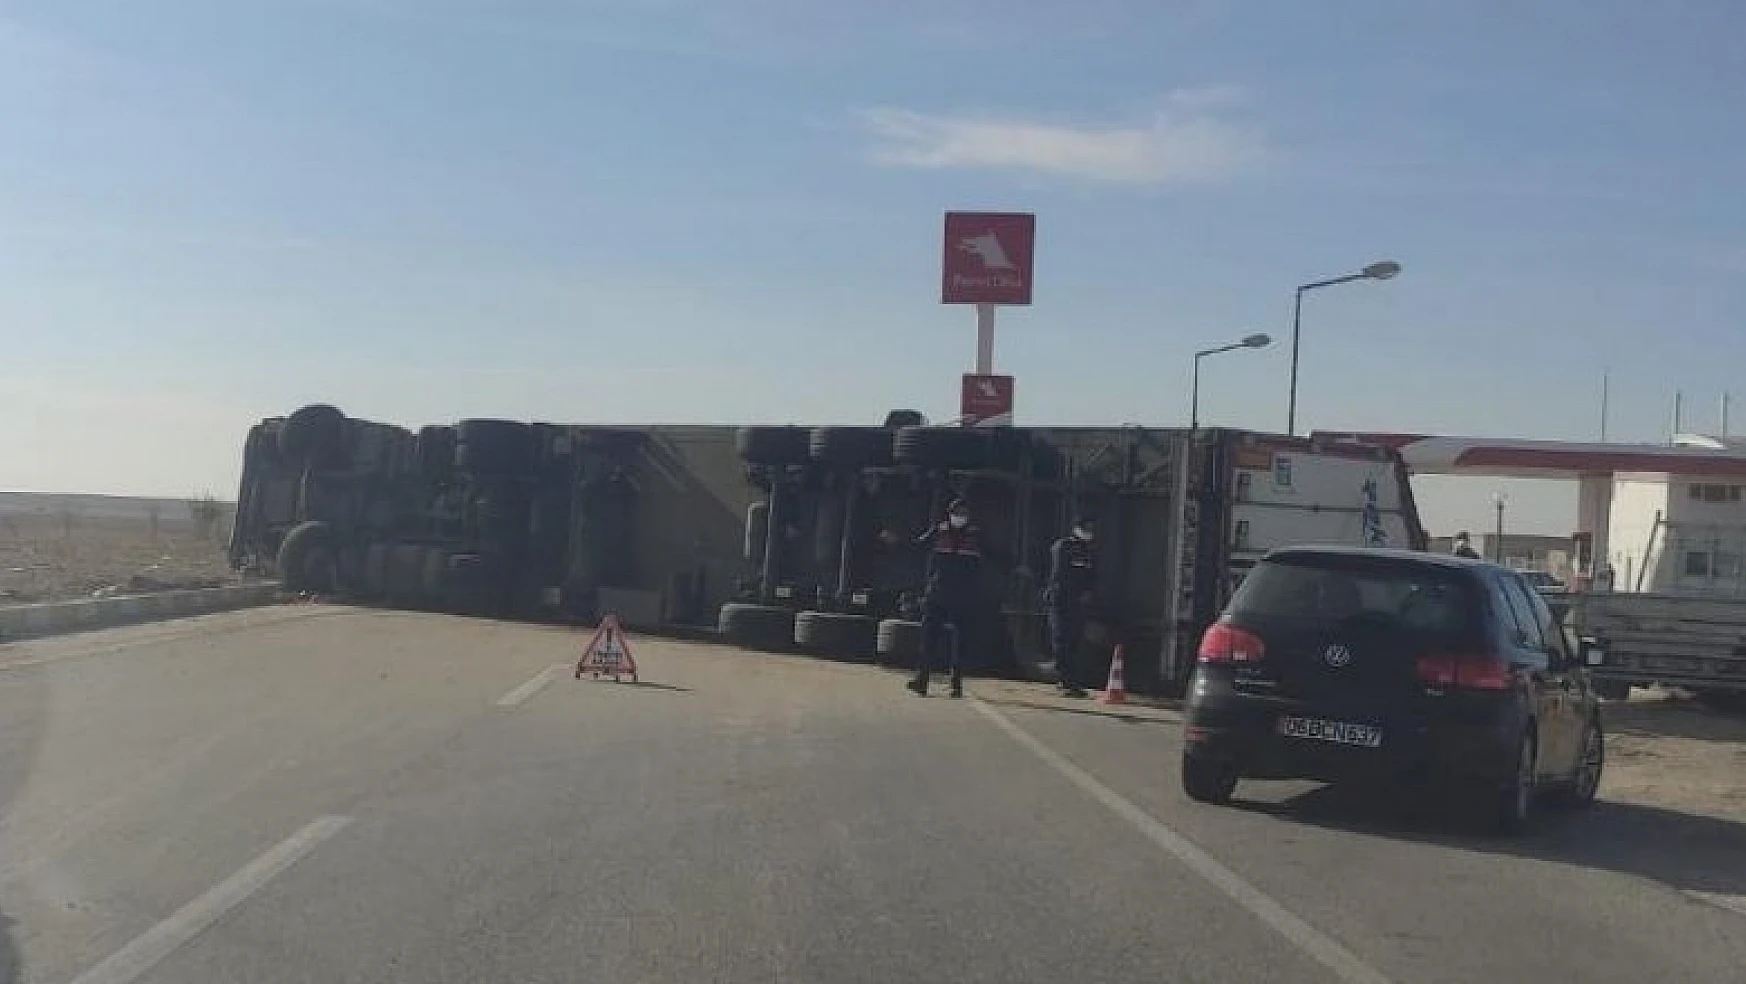 Konya'da devrilen tırın sürücüsü yaralandı